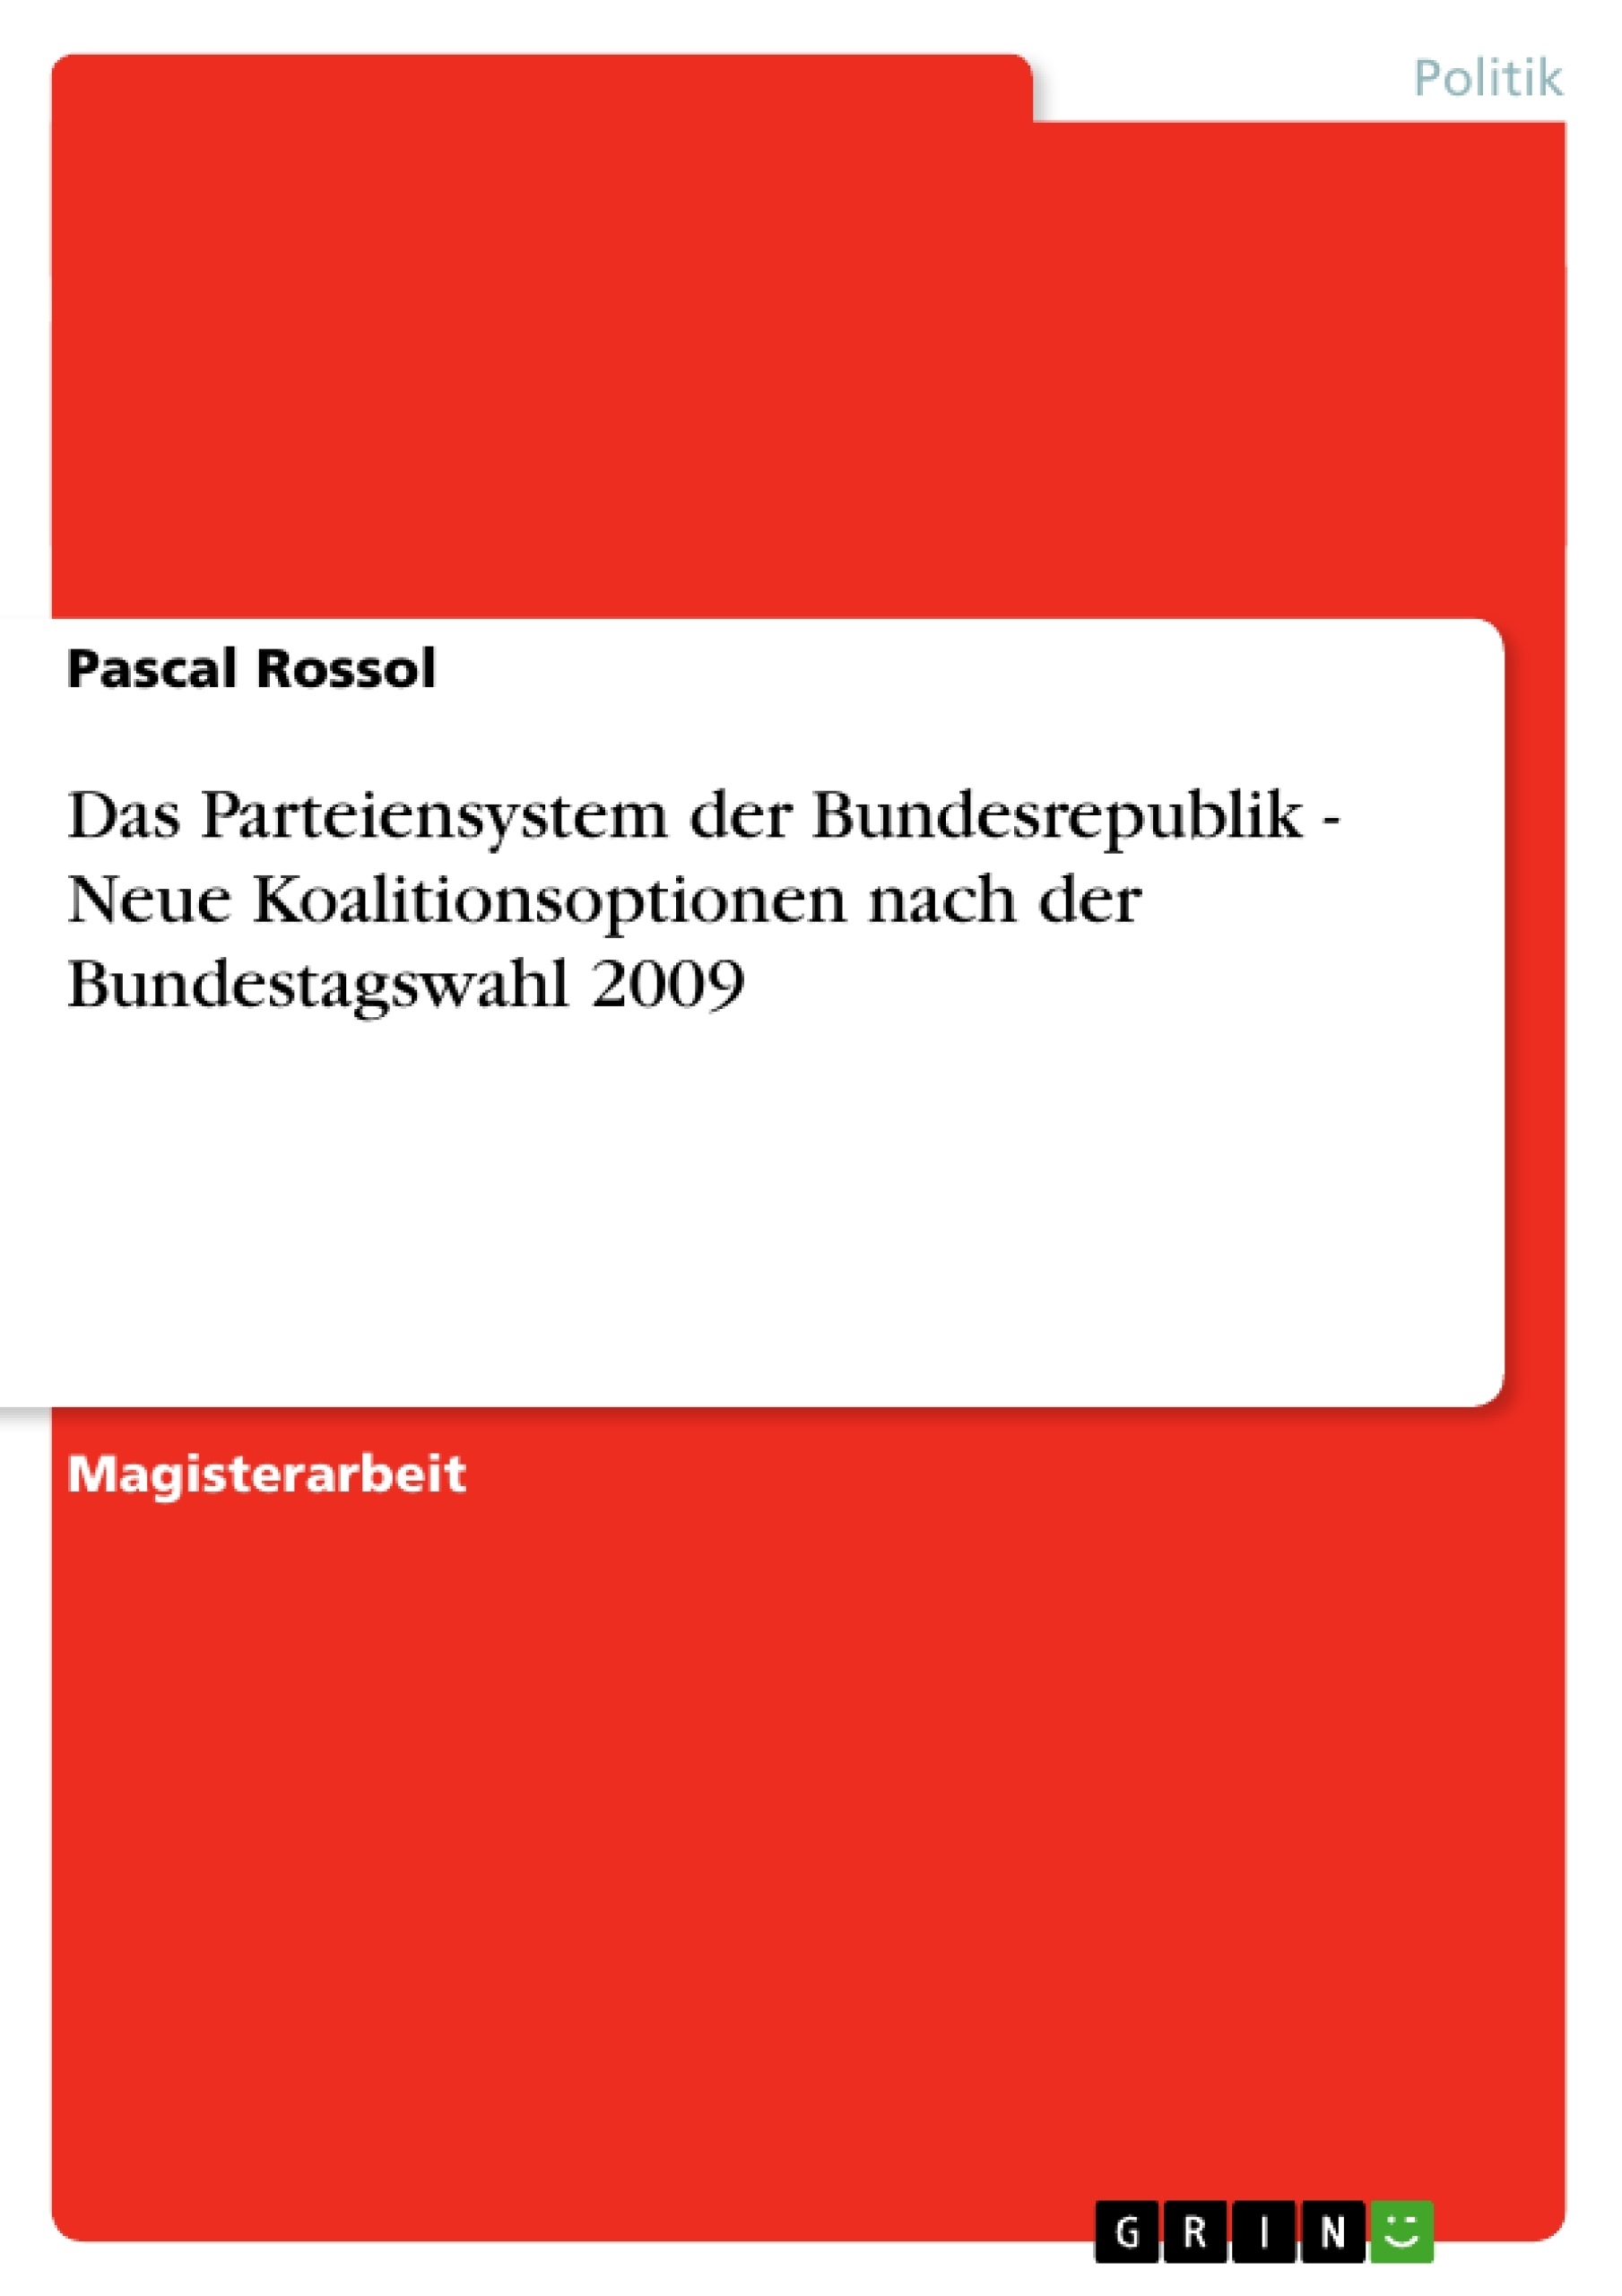 Titre: Das Parteiensystem der Bundesrepublik - Neue Koalitionsoptionen nach der Bundestagswahl 2009